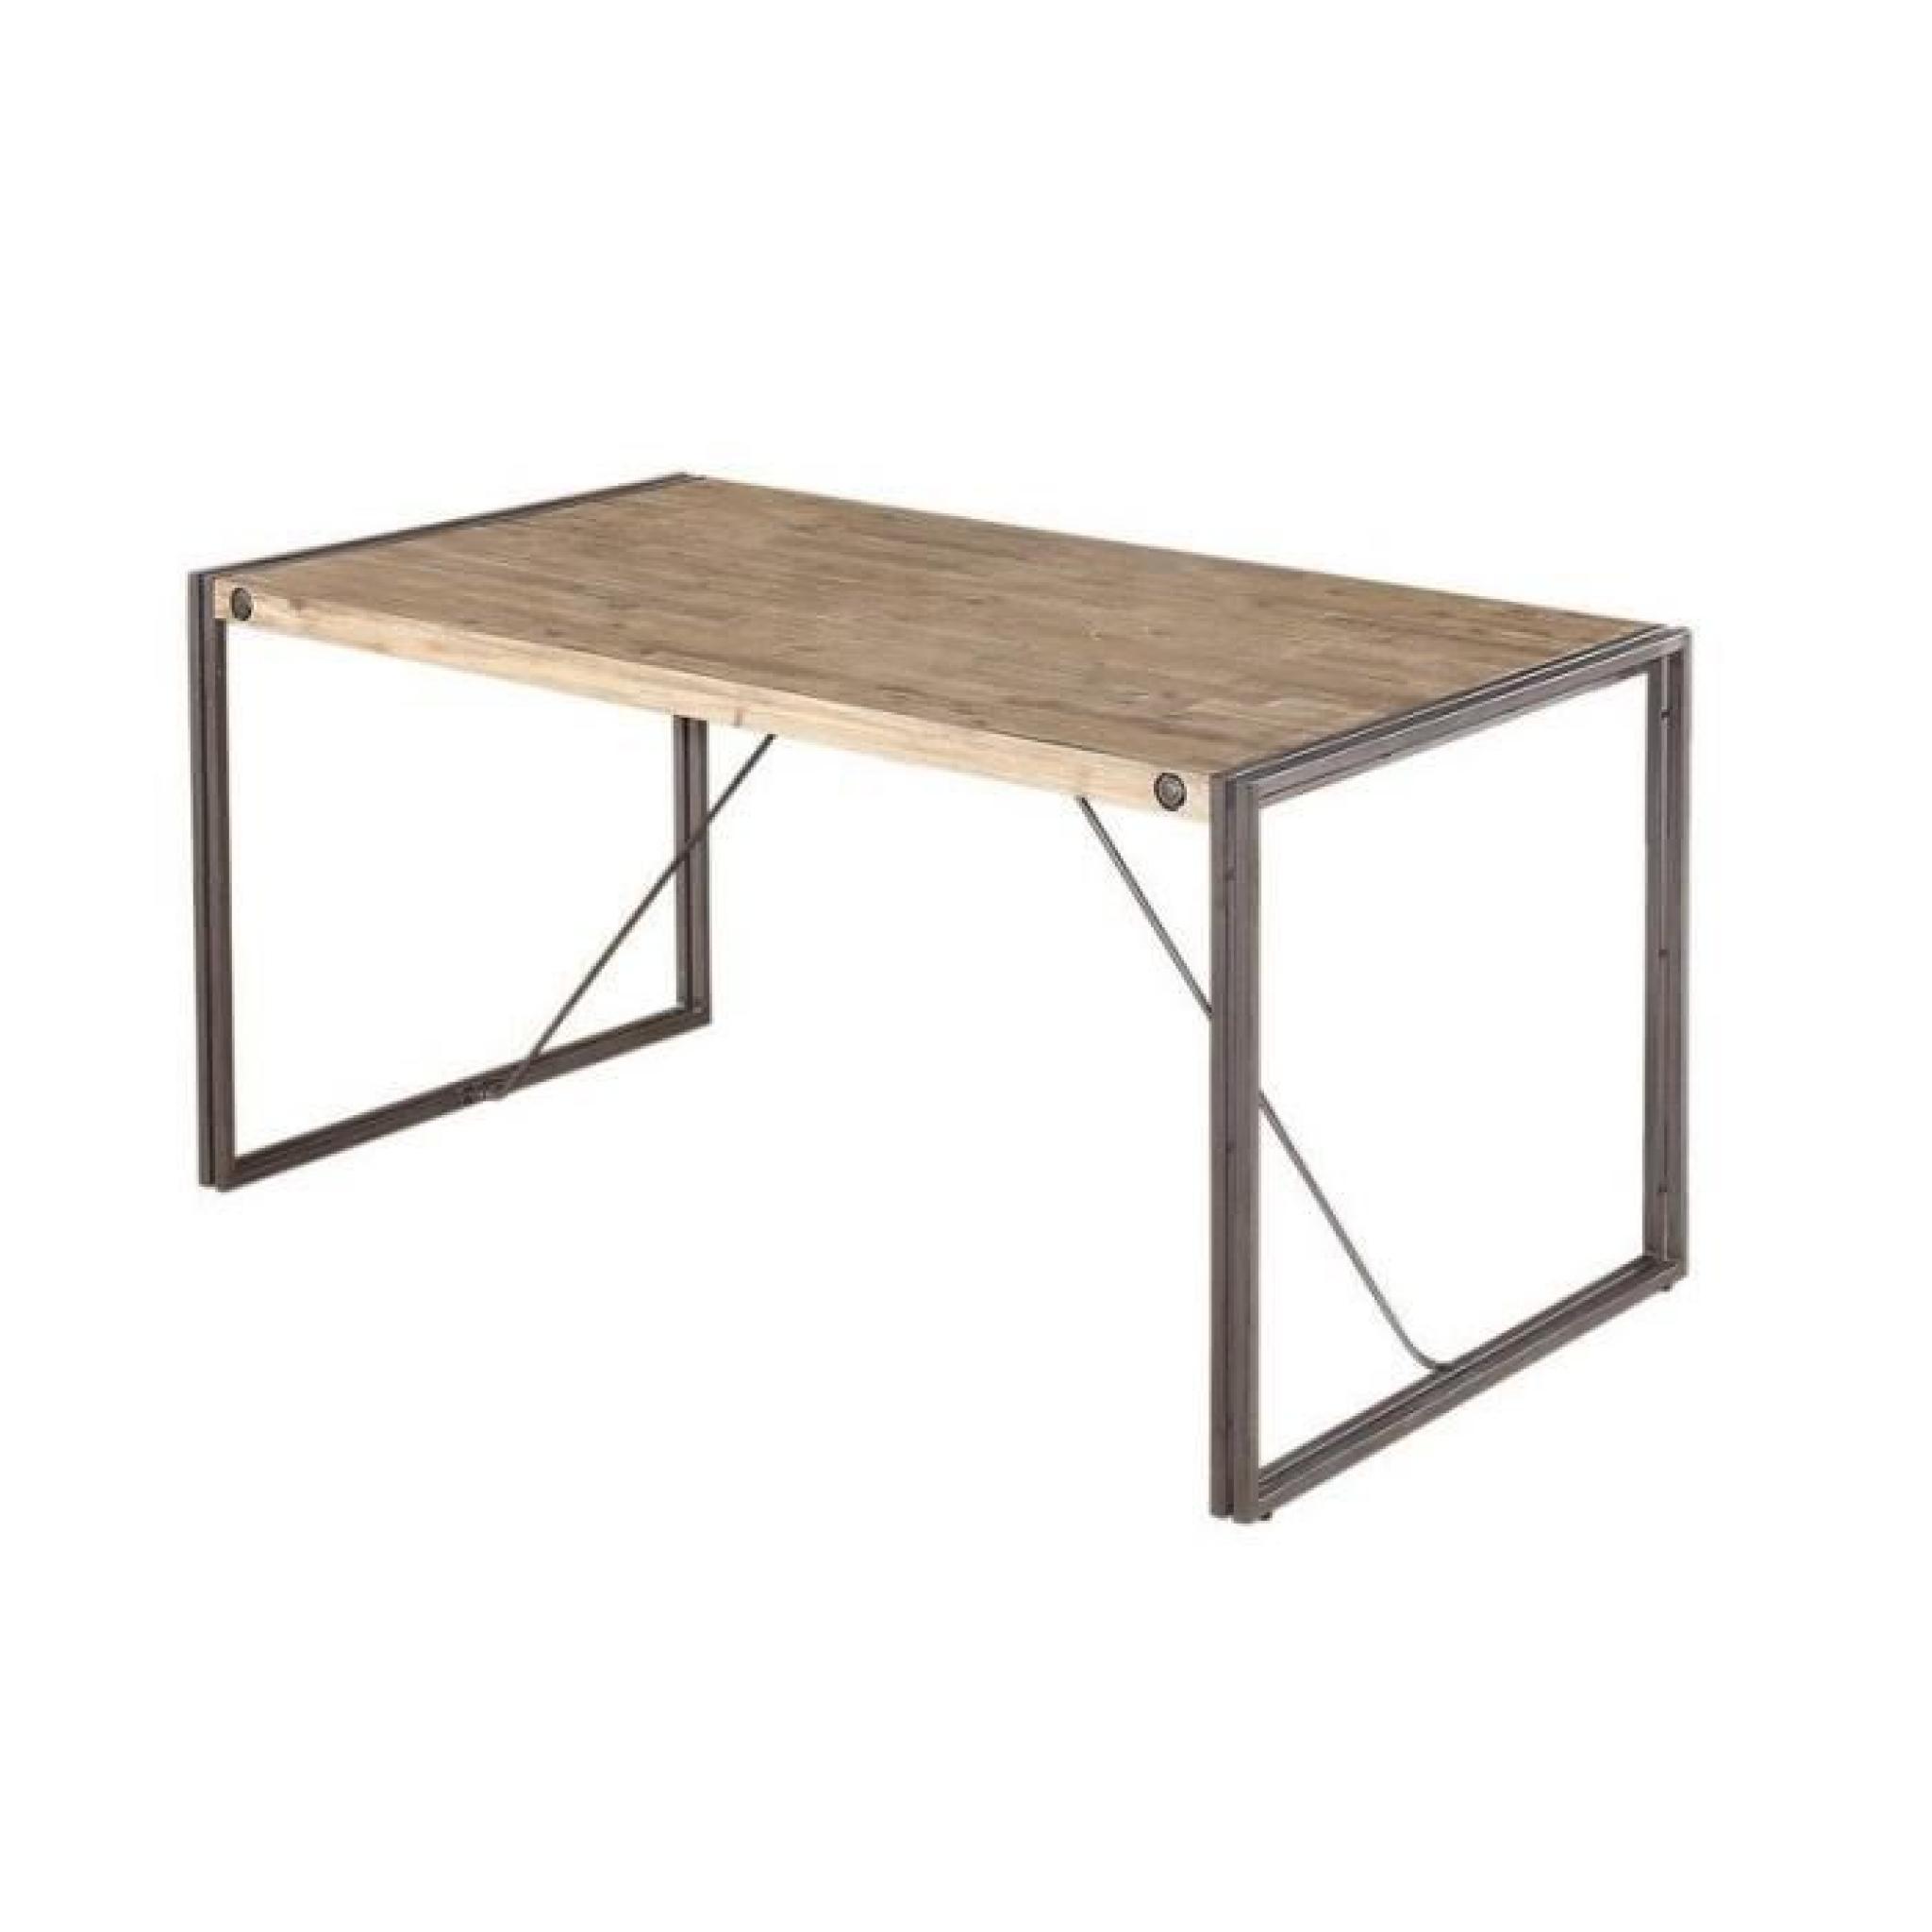 Atelier - Table repas 160X90cm Design industriel